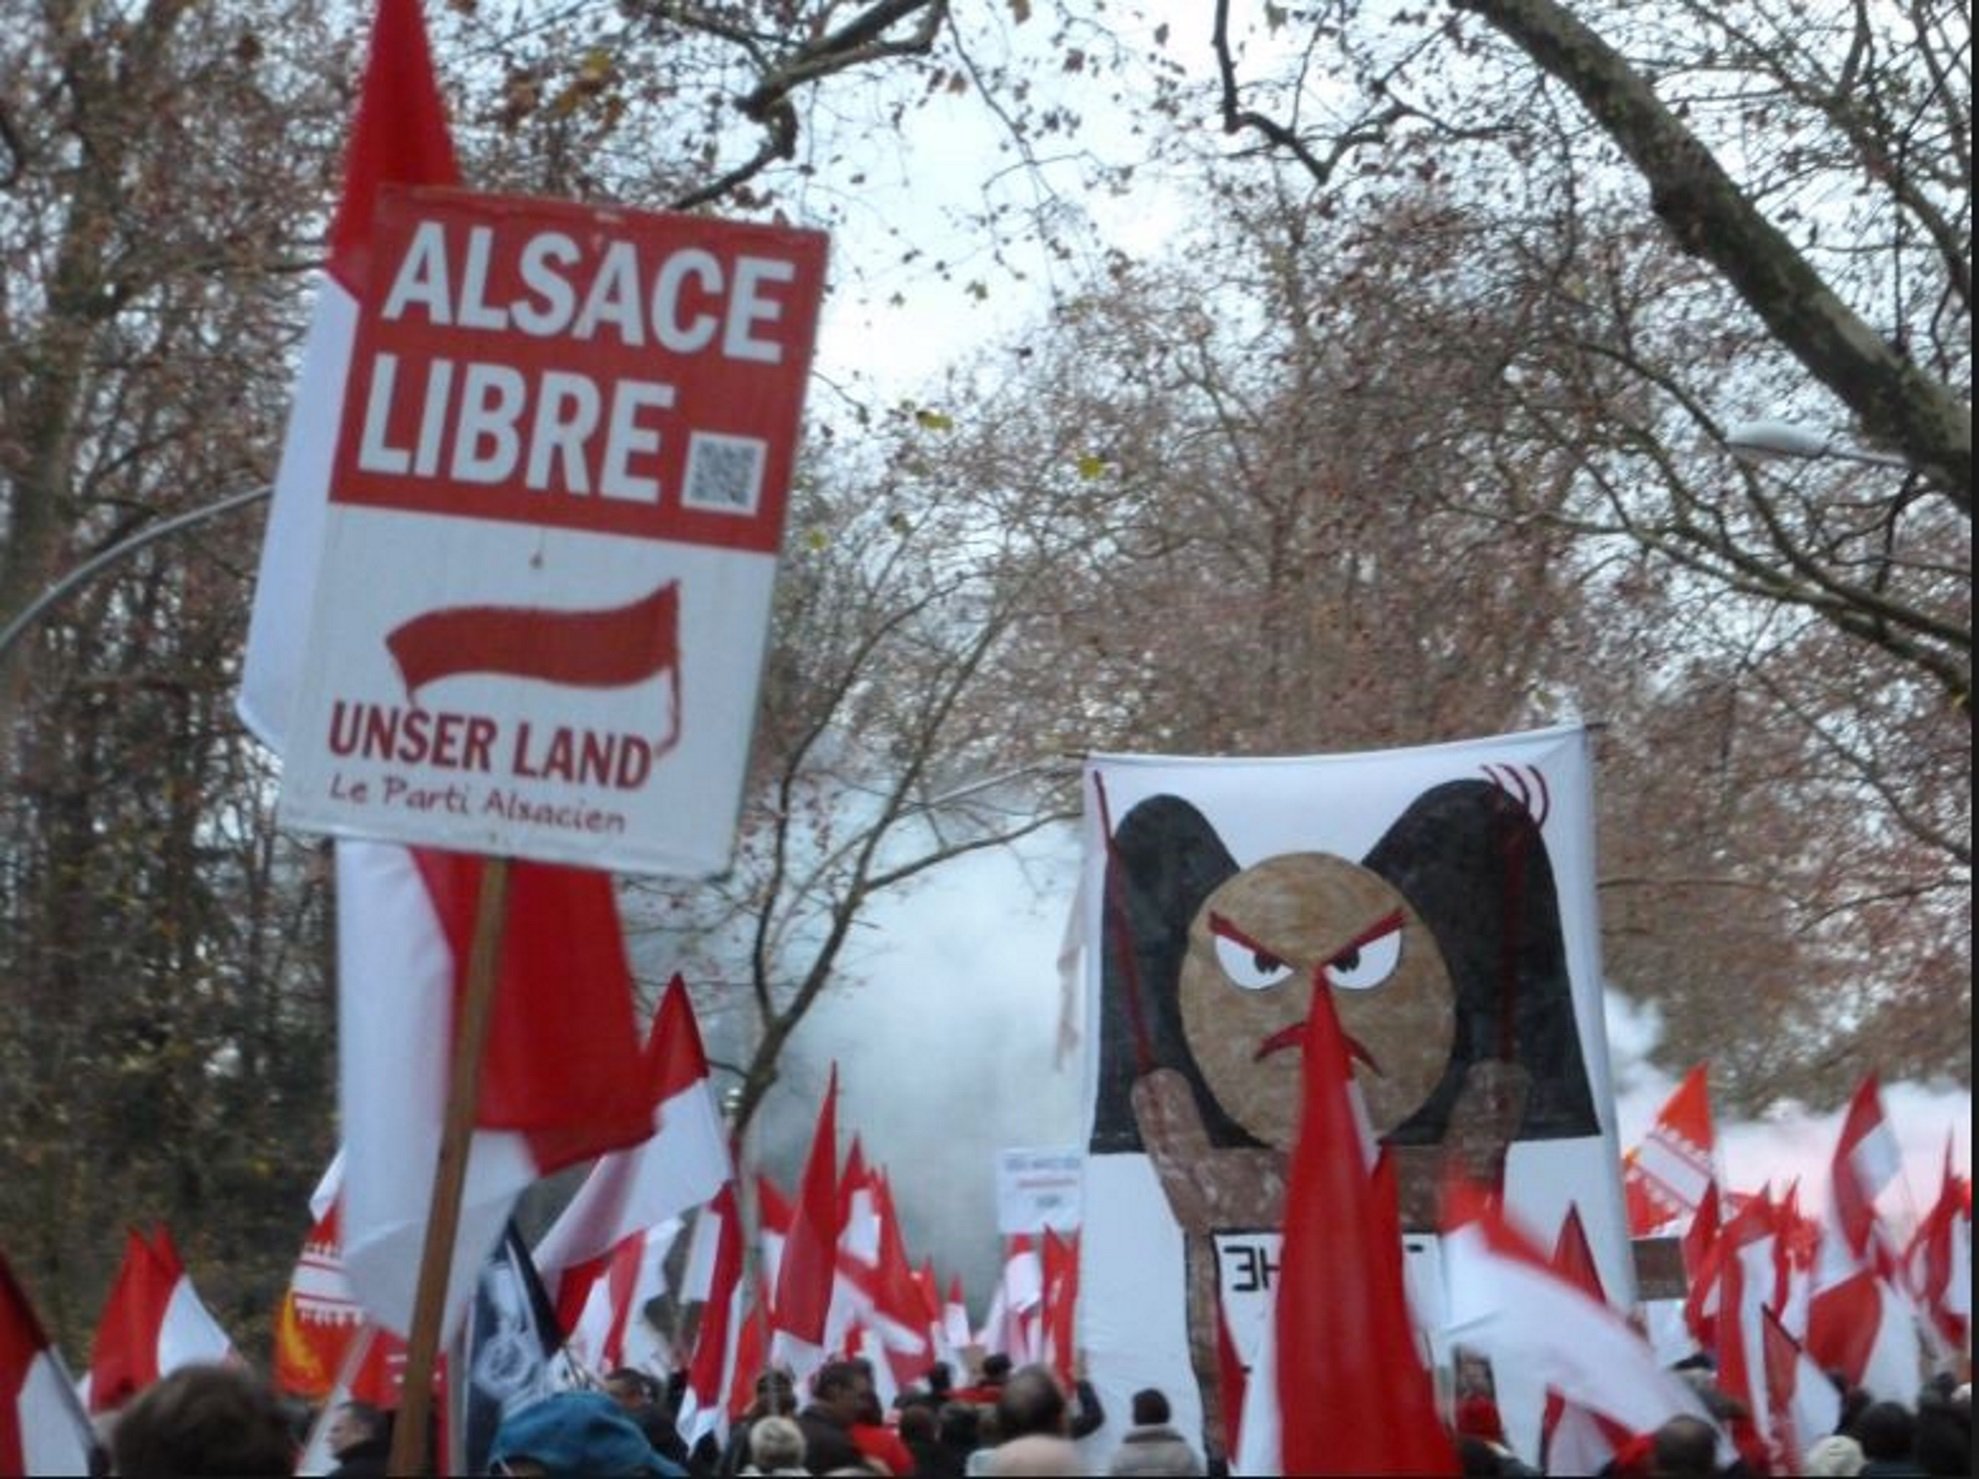 Unser Land crida els alsacians a manifestar-se també el dia 2 a Estrasburg